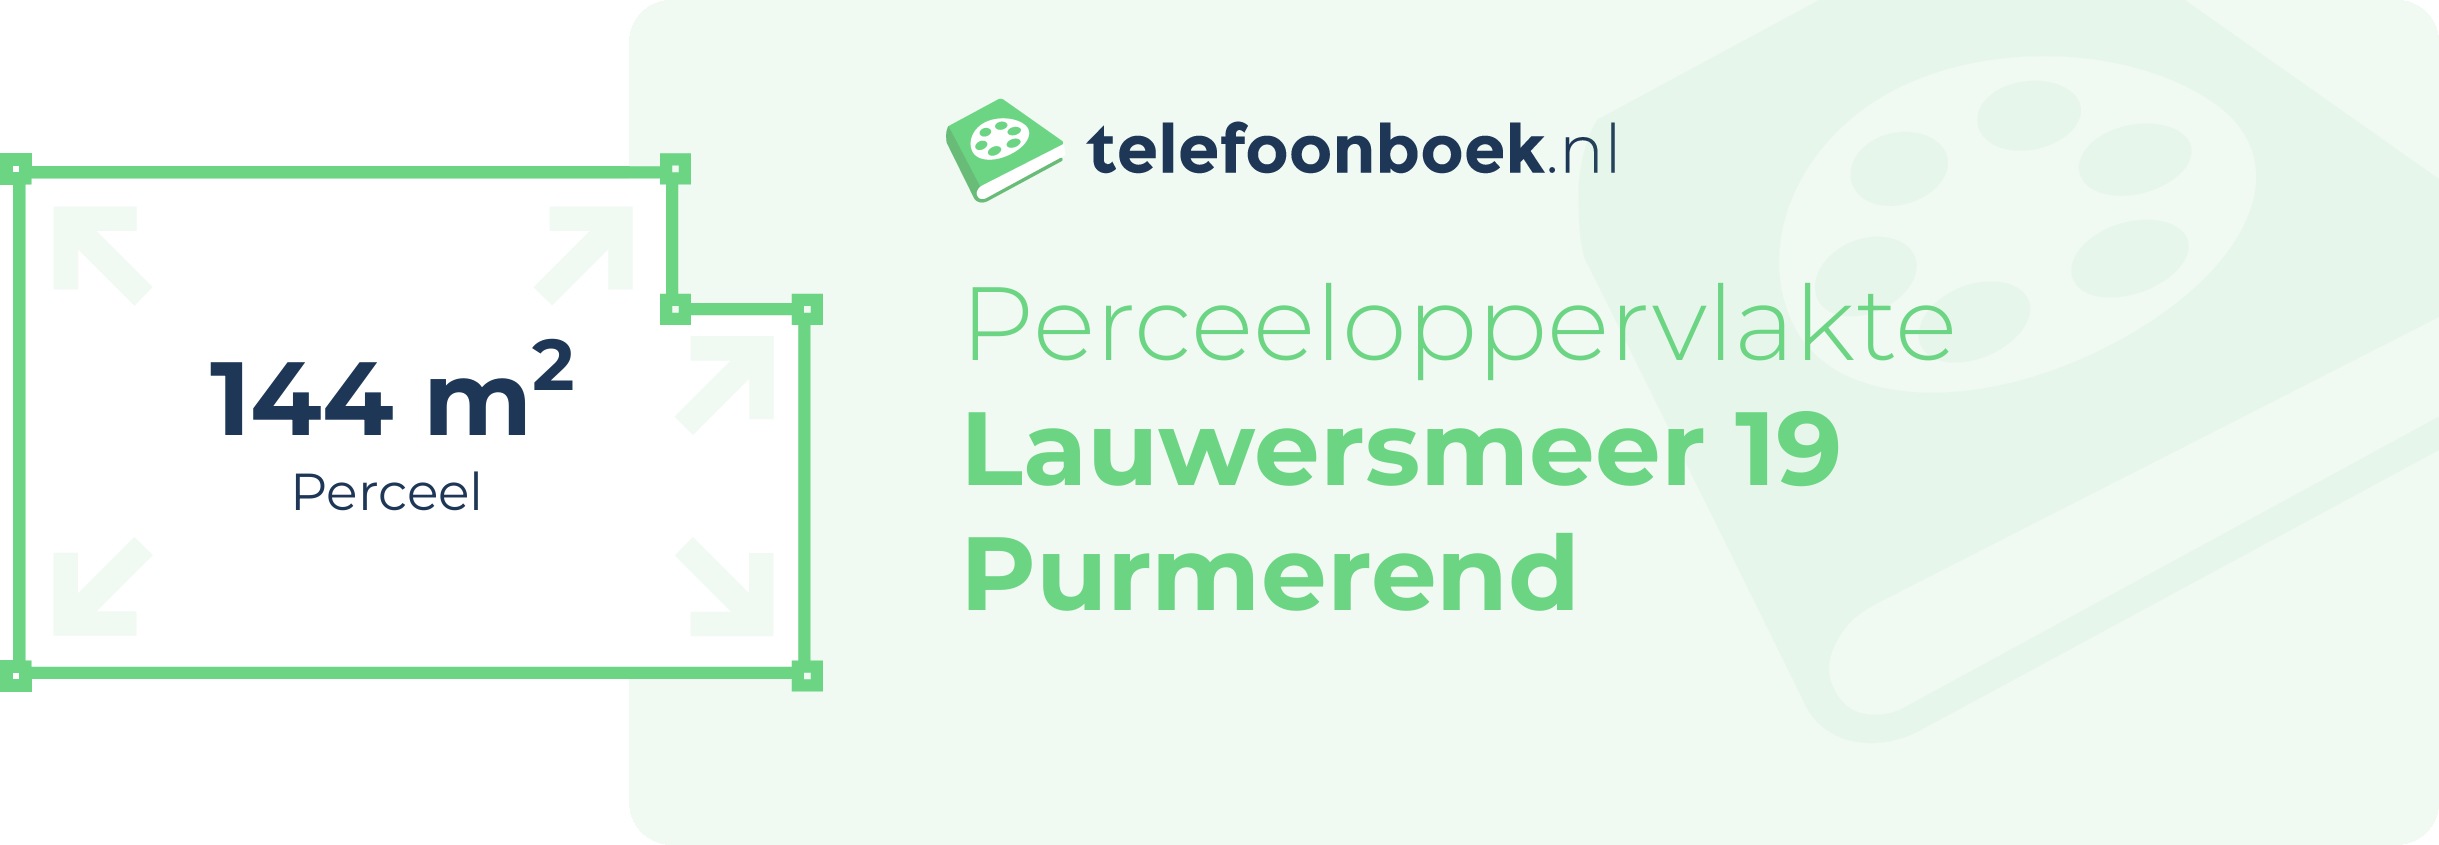 Perceeloppervlakte Lauwersmeer 19 Purmerend